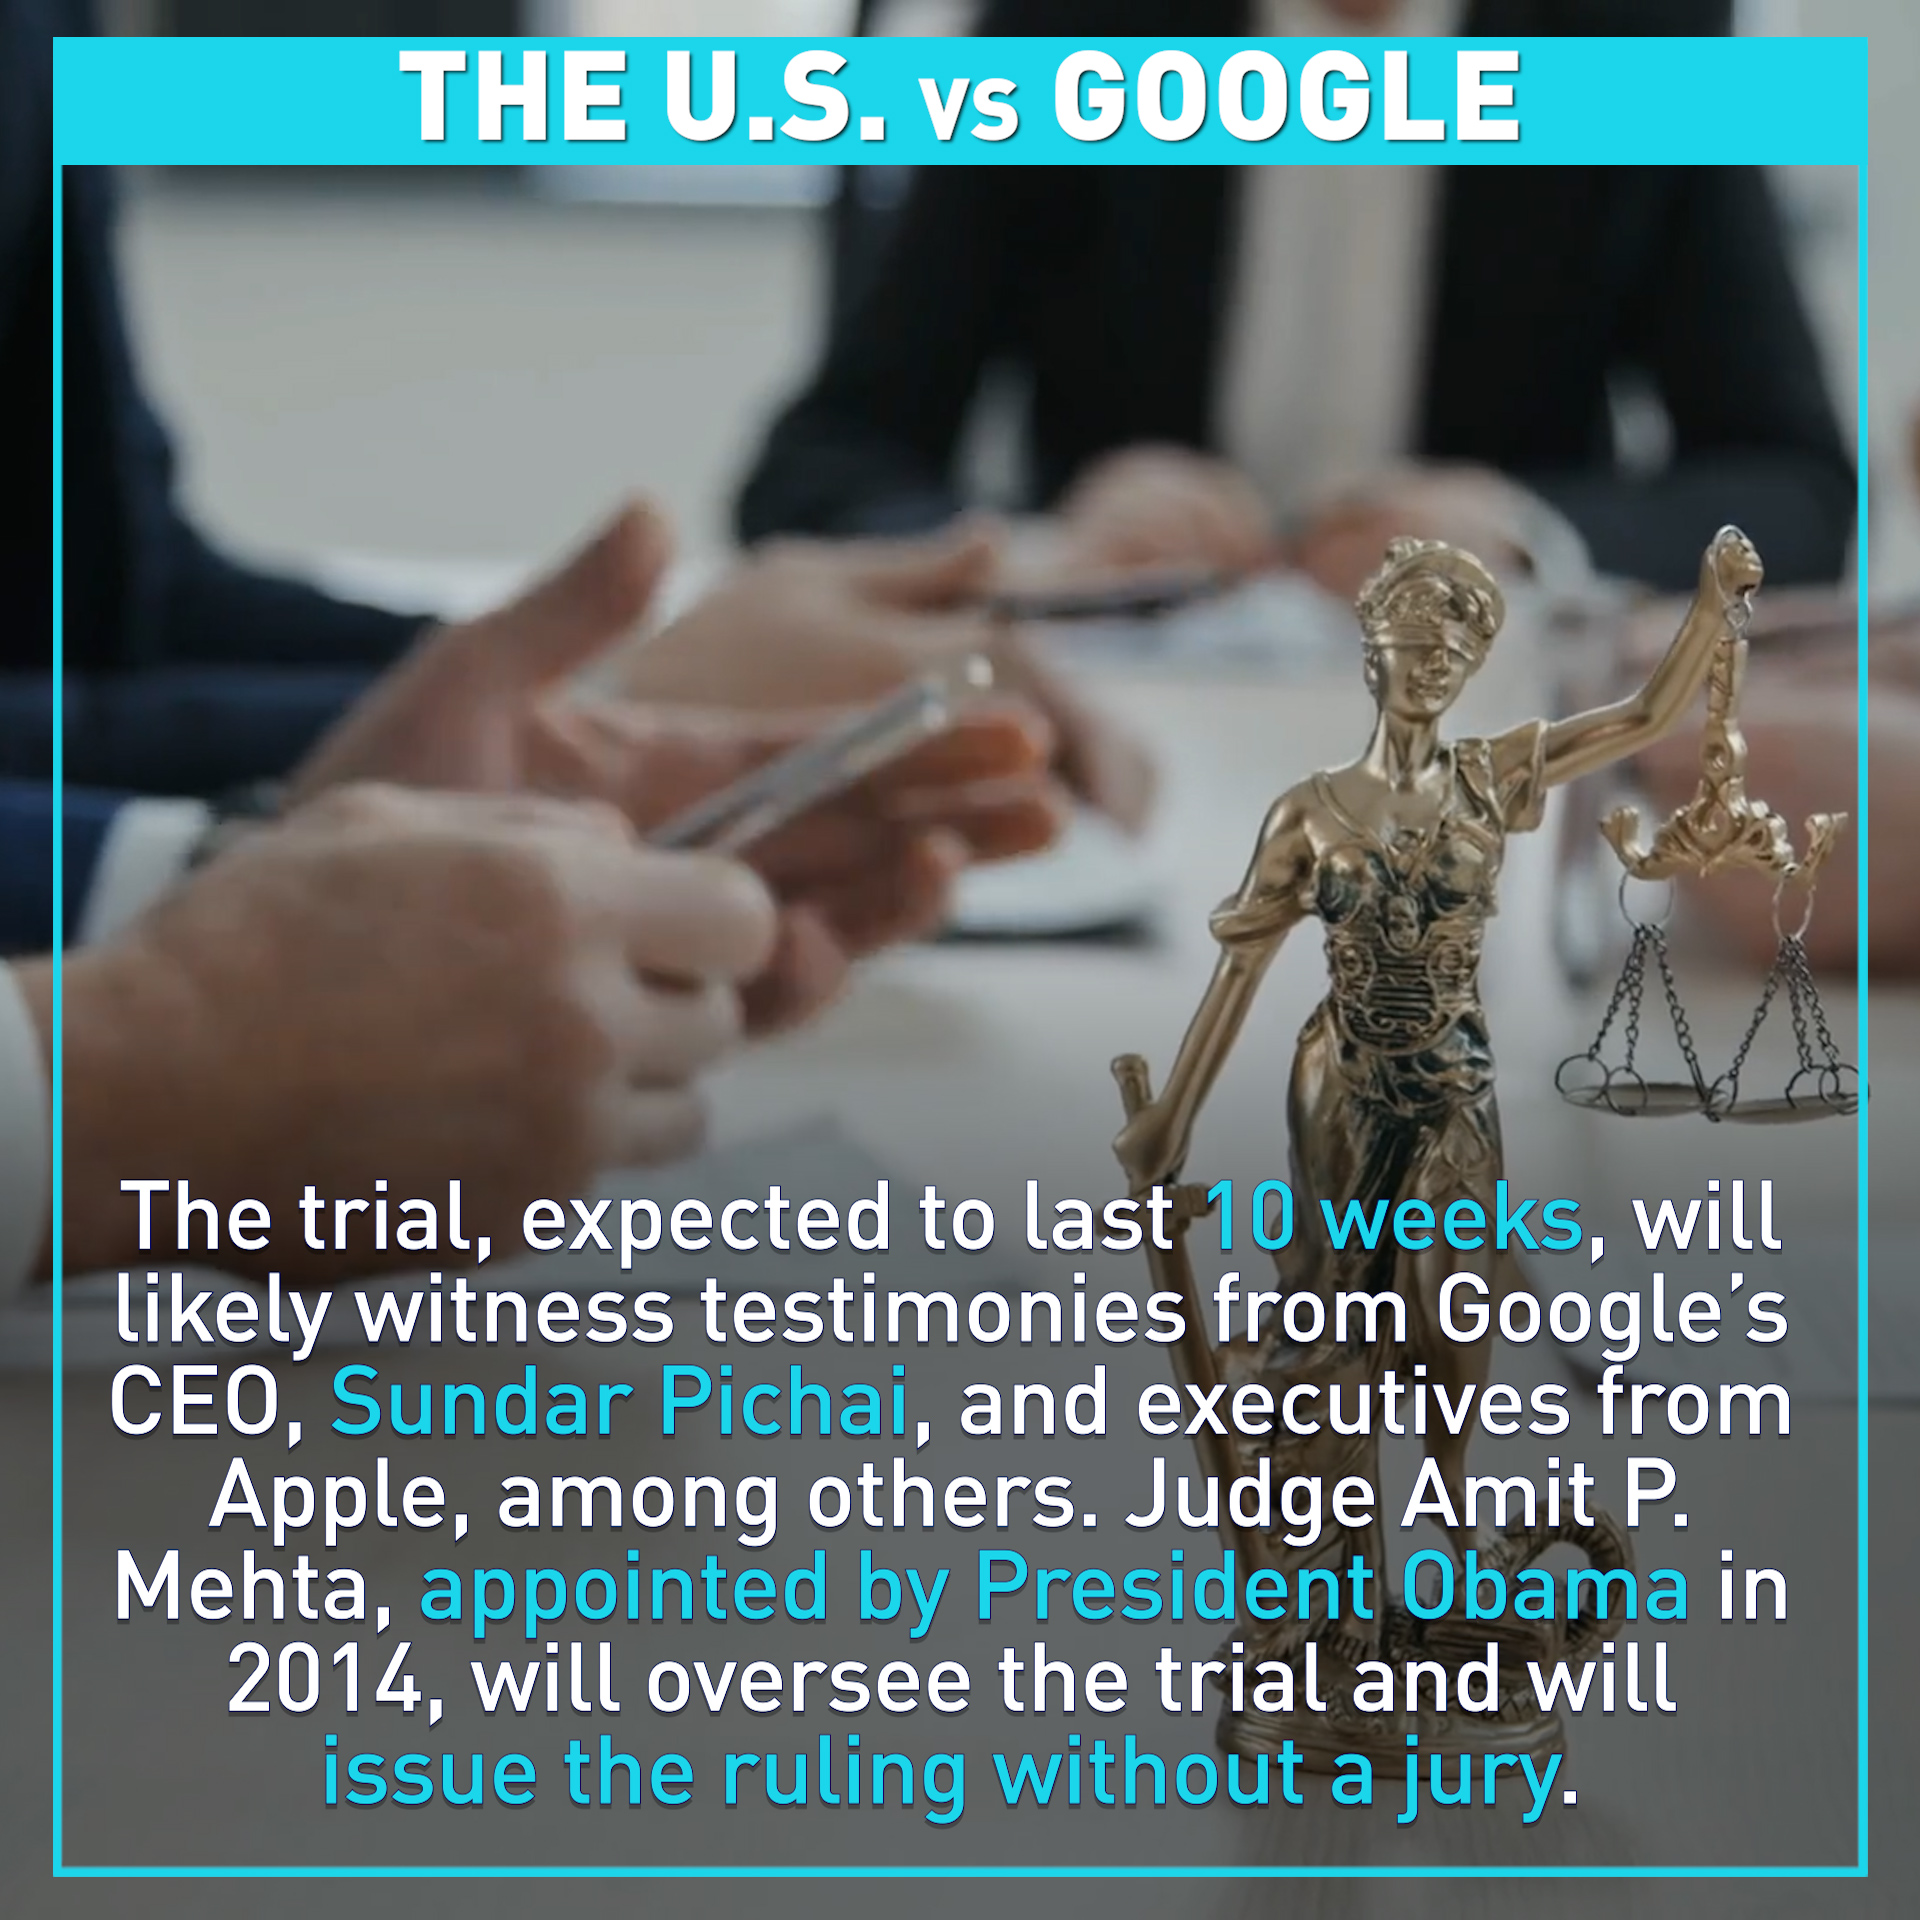 The U.S. v.s Google trial, explained